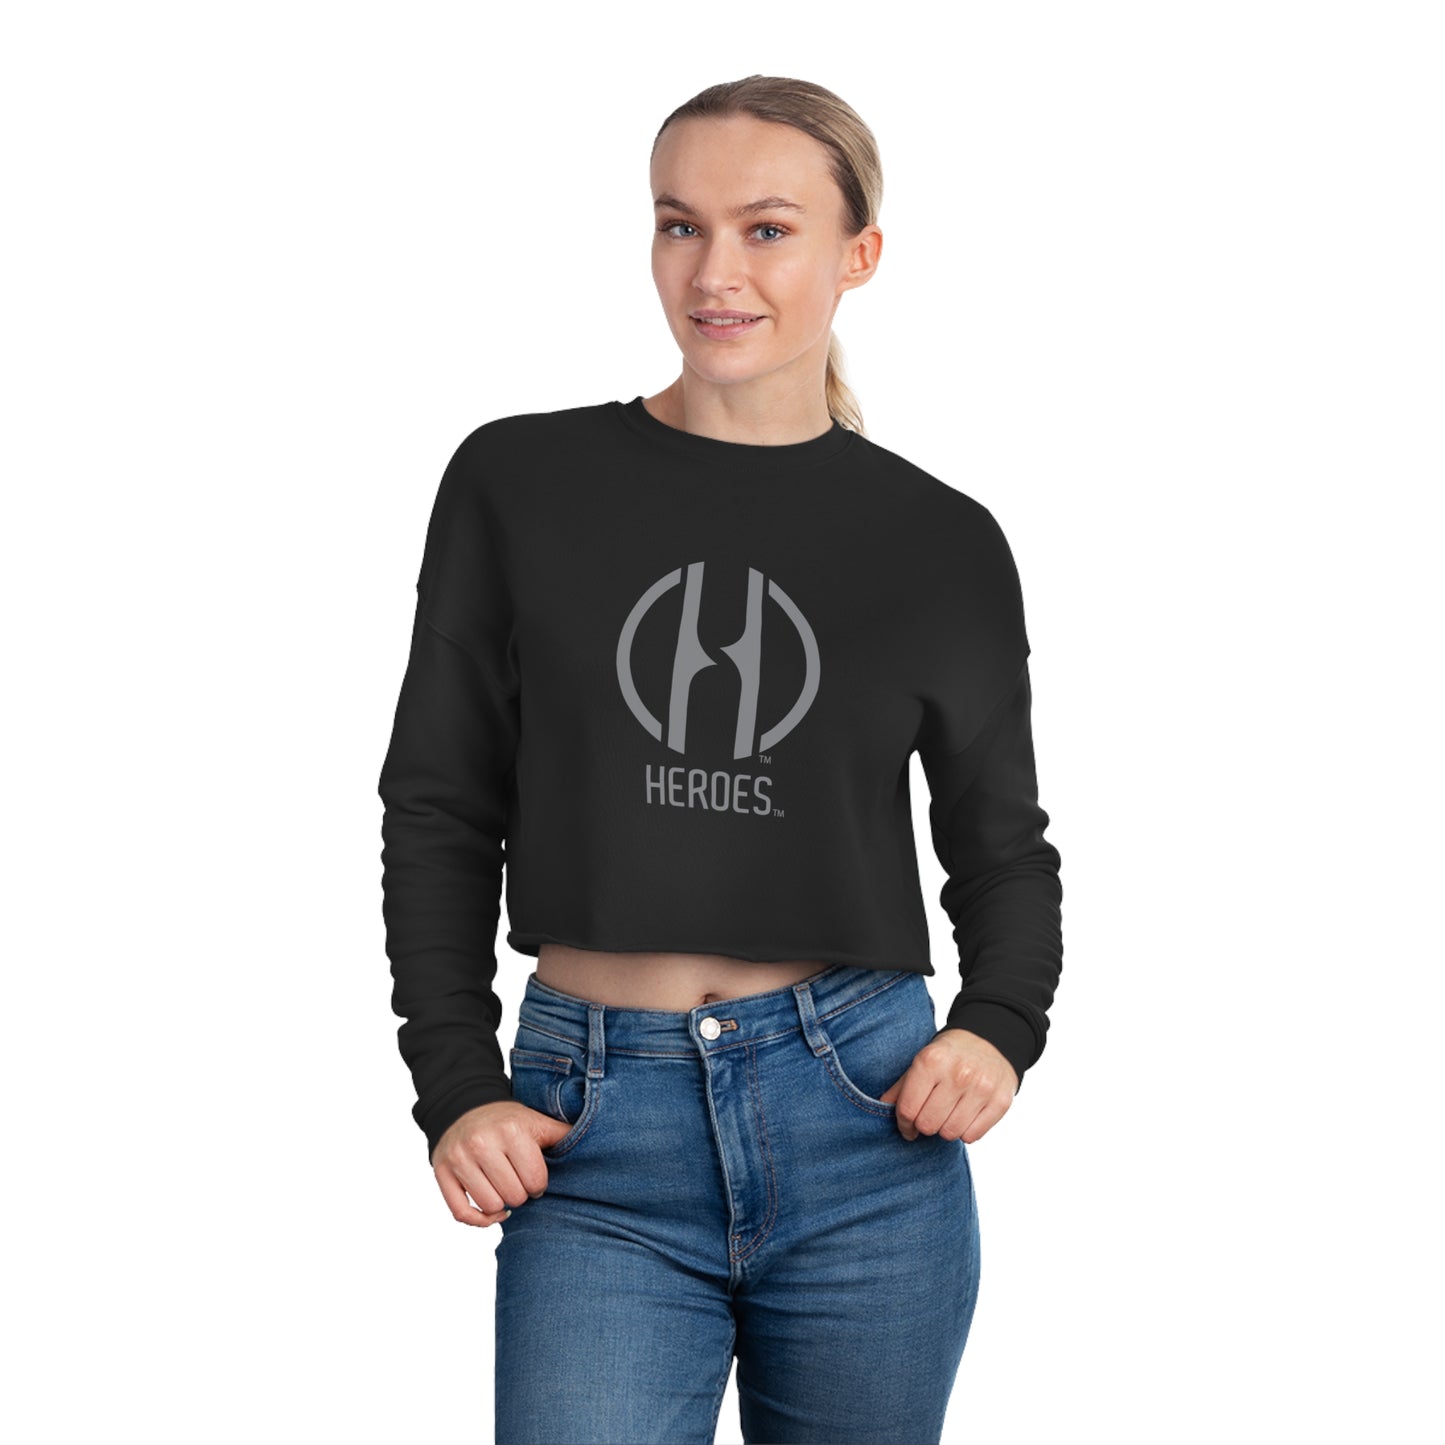 HEROES Women's Cropped Sweatshirt - Making It Happen Foundation Inc.